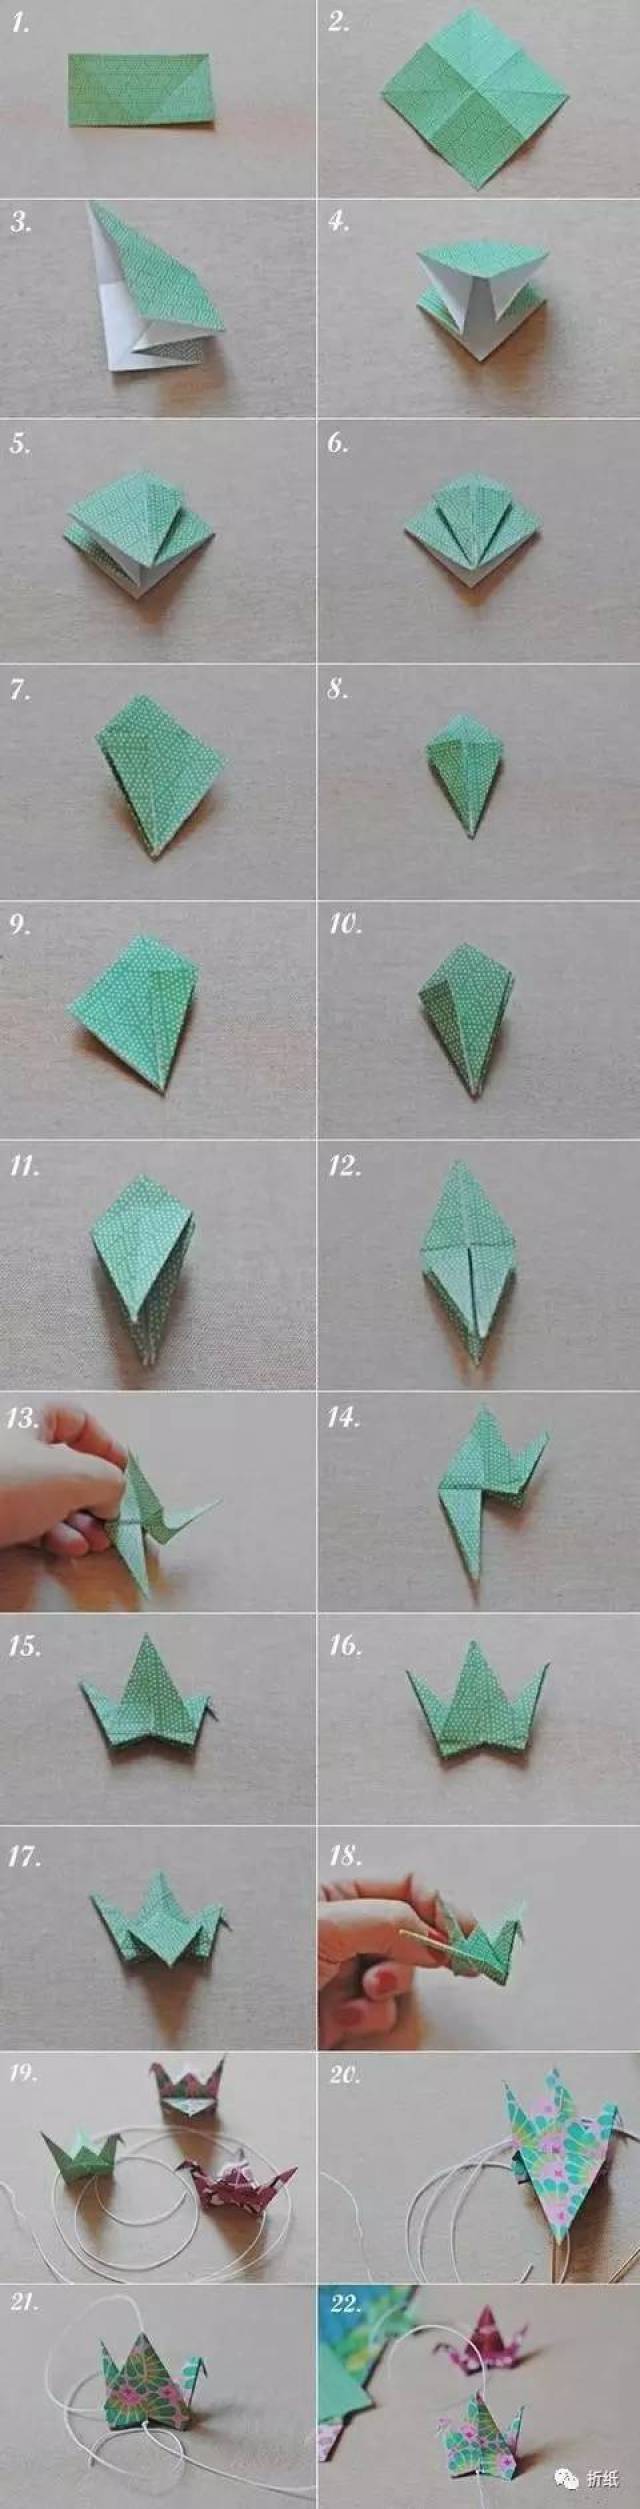 亲子手工之经典折纸,飞机星星和千纸鹤超详细教程